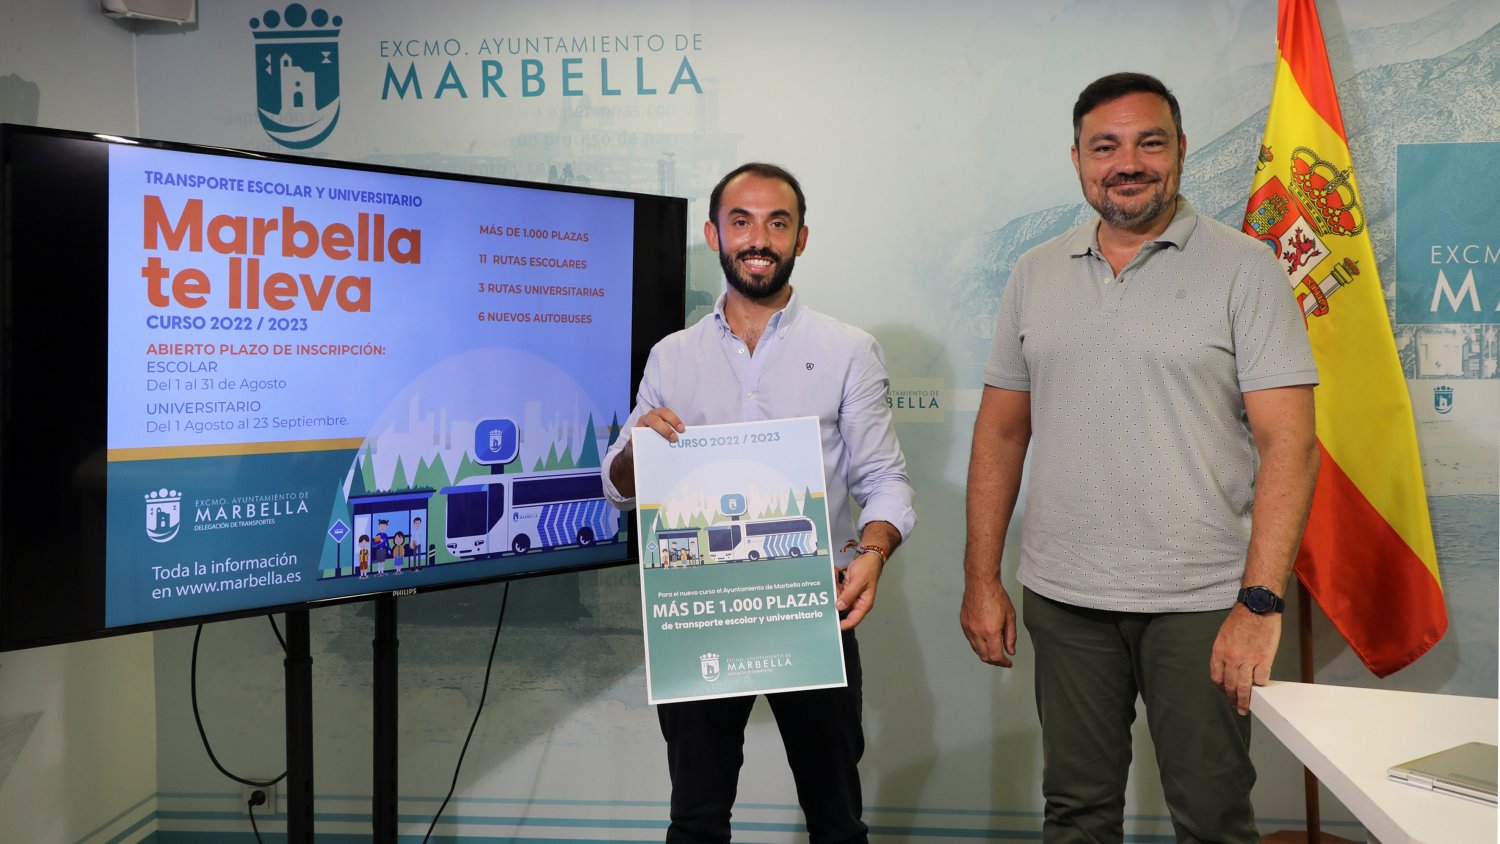 Marbella abre el 1 de agosto el plazo de inscripción para el transporte escolar y universitario